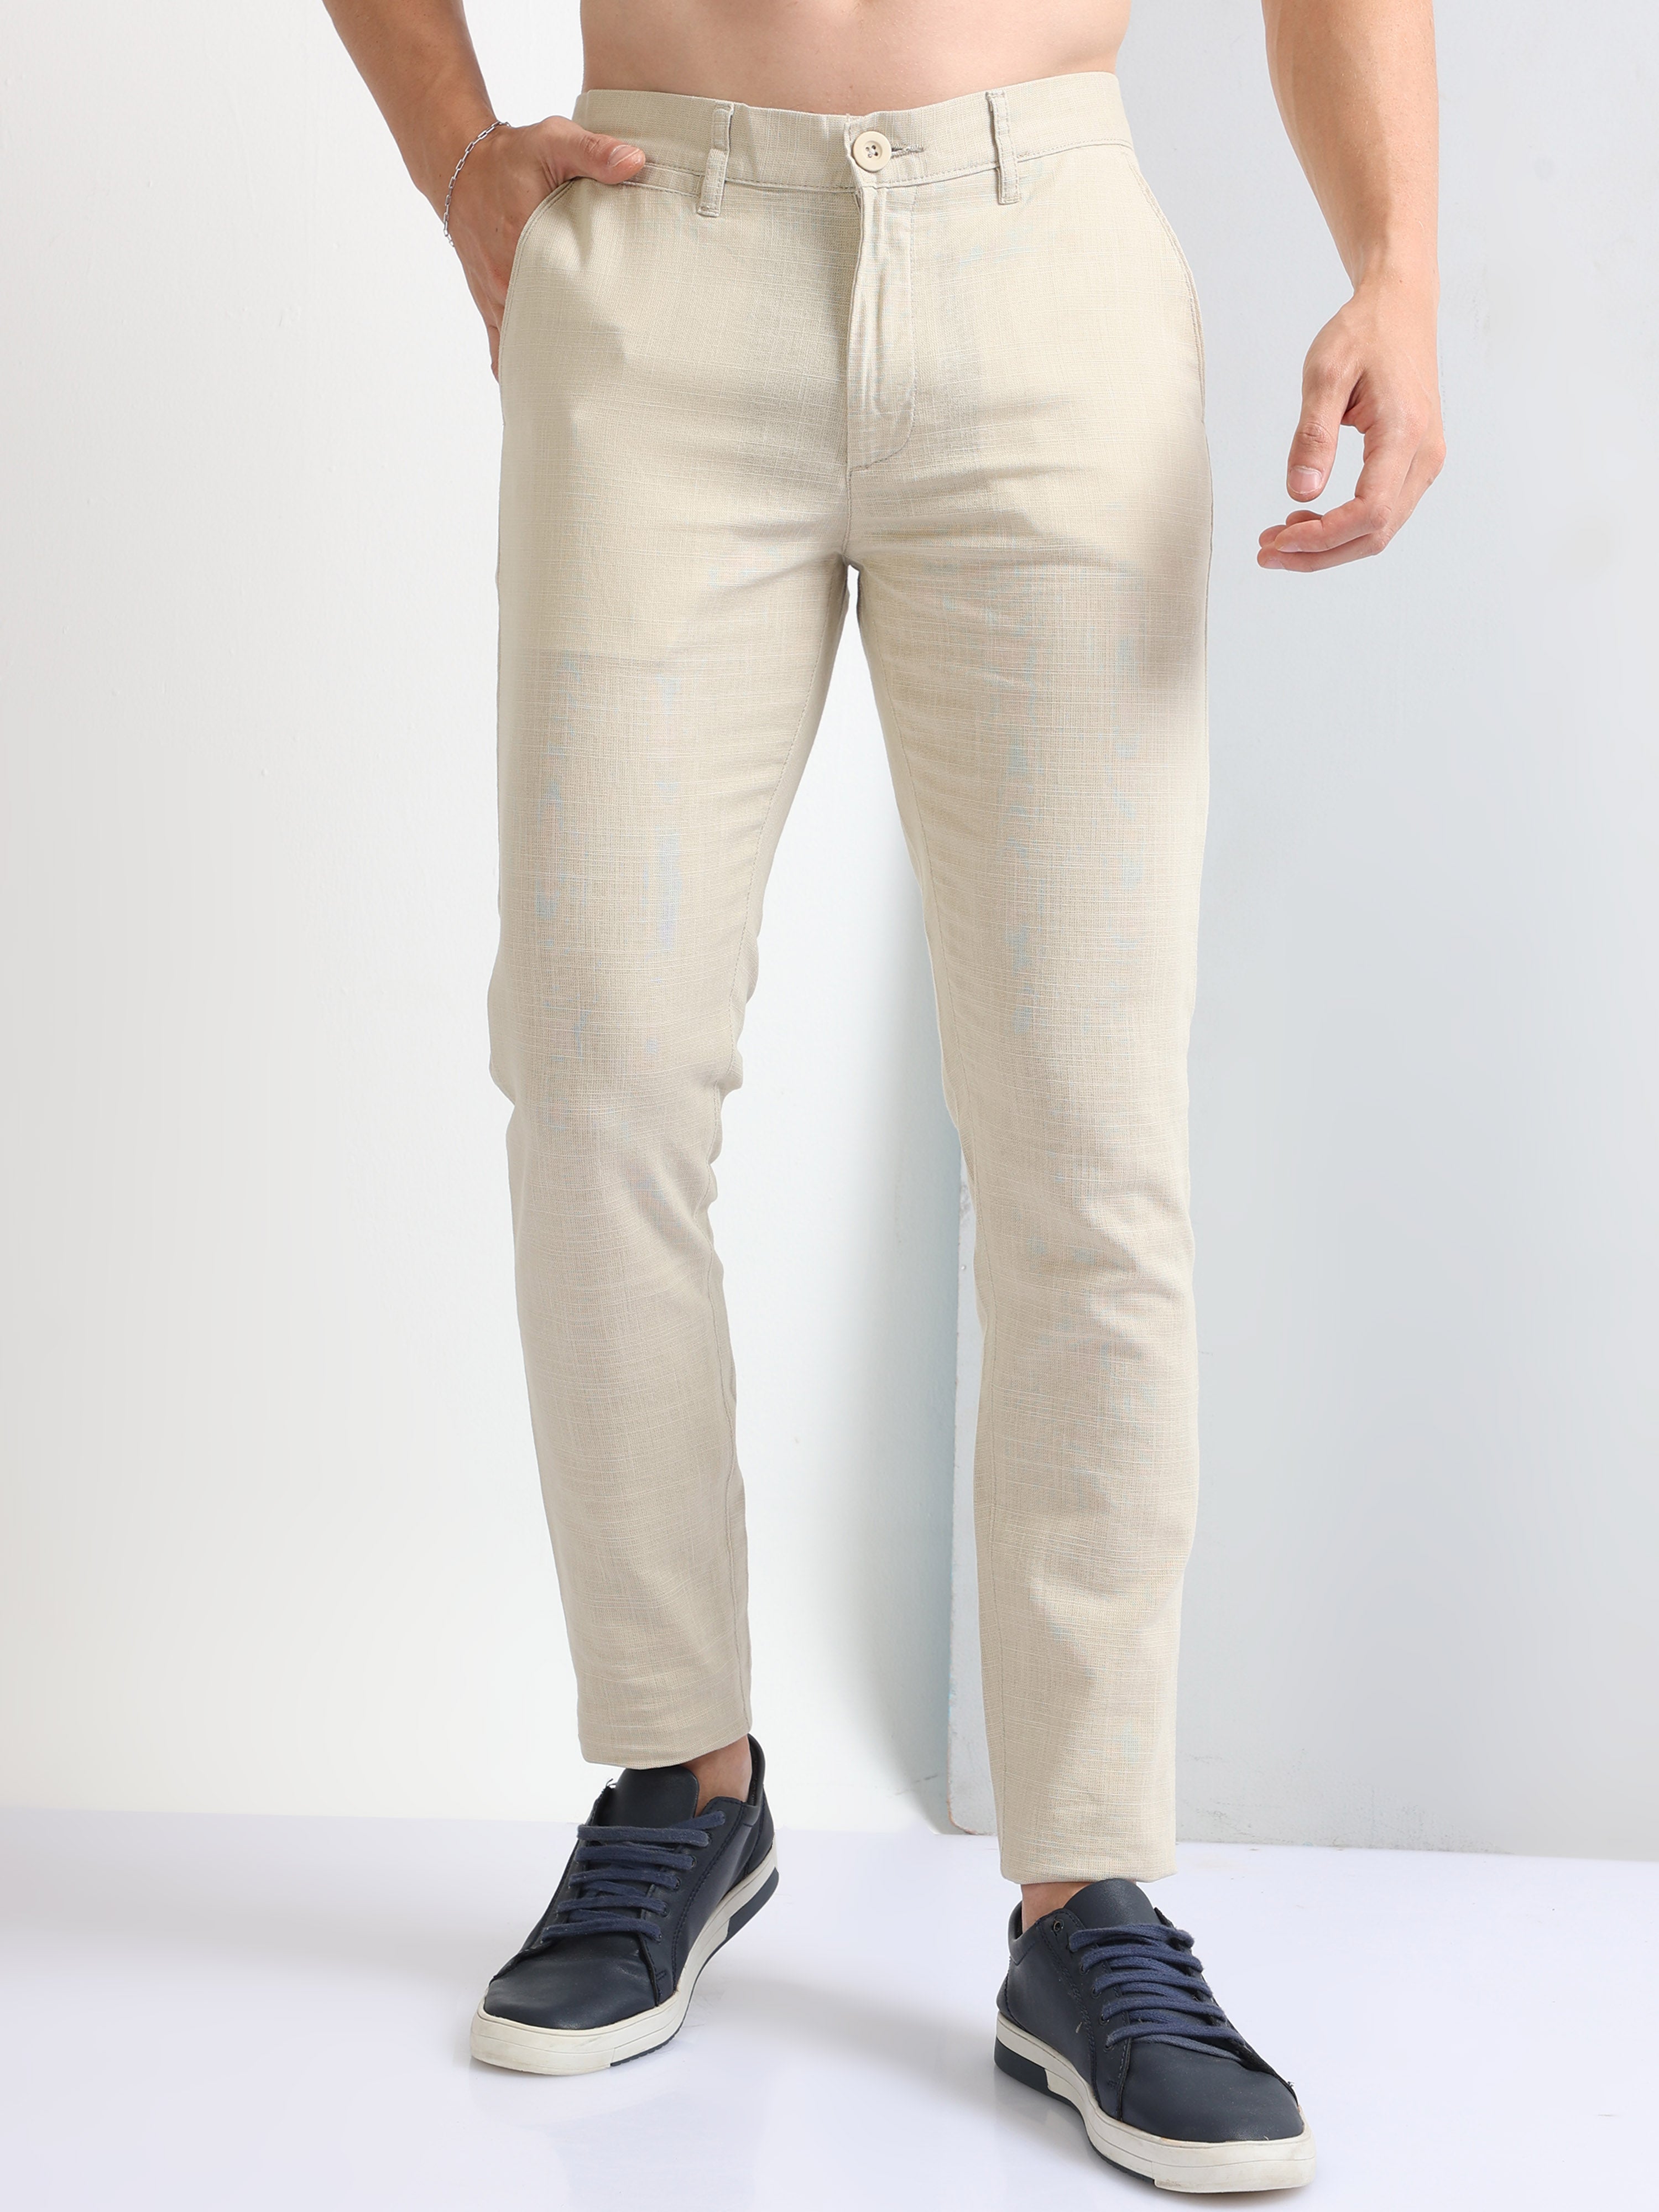 Buy Teal Premium Cotton-Linen Men's Trousers-North Republic